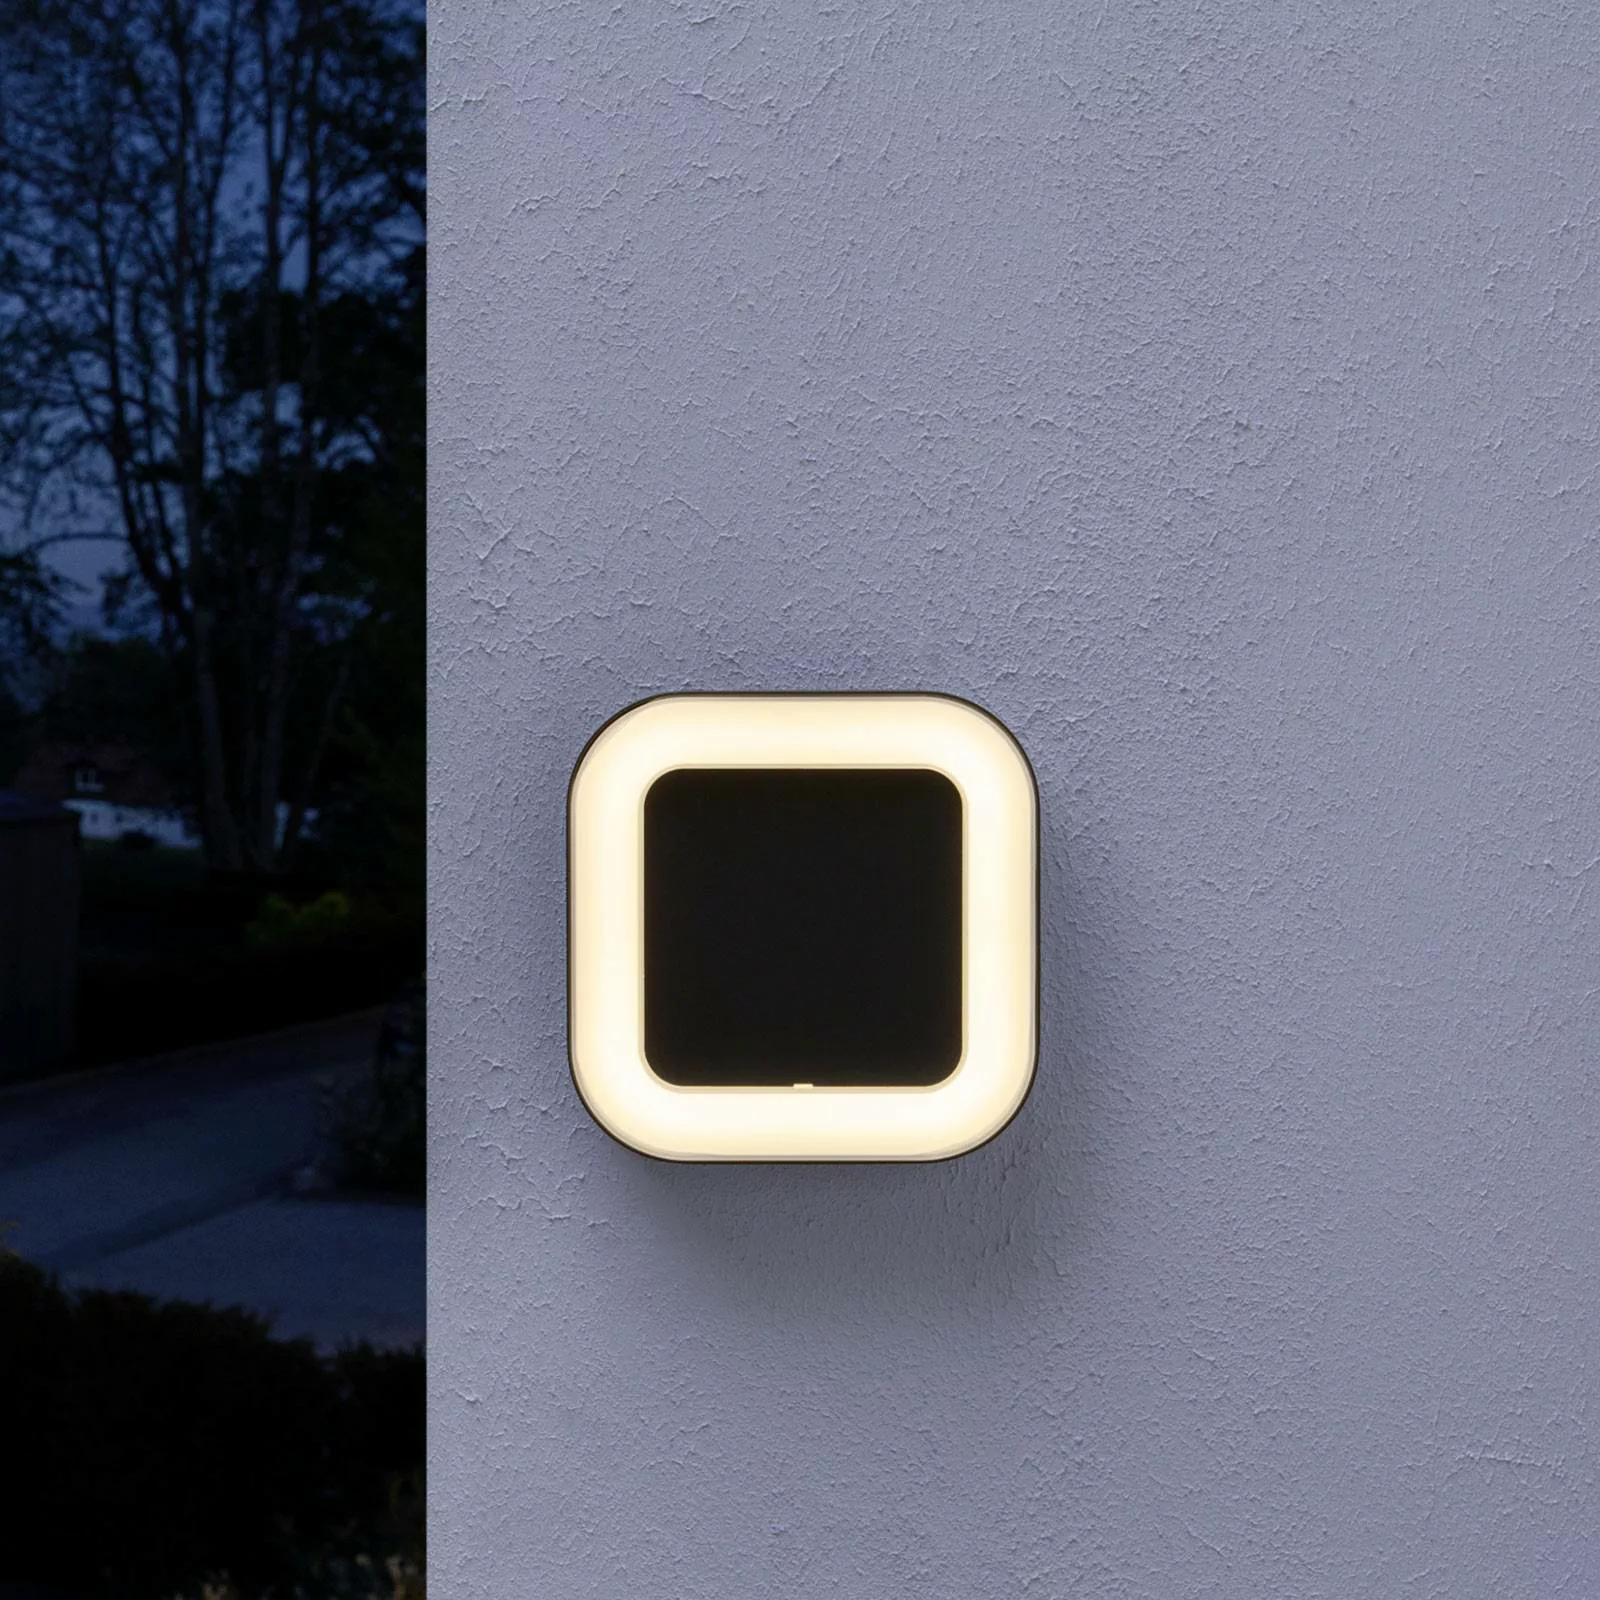 LEDVANCE Endura Style Square Außenlampe dunkelgrau günstig online kaufen